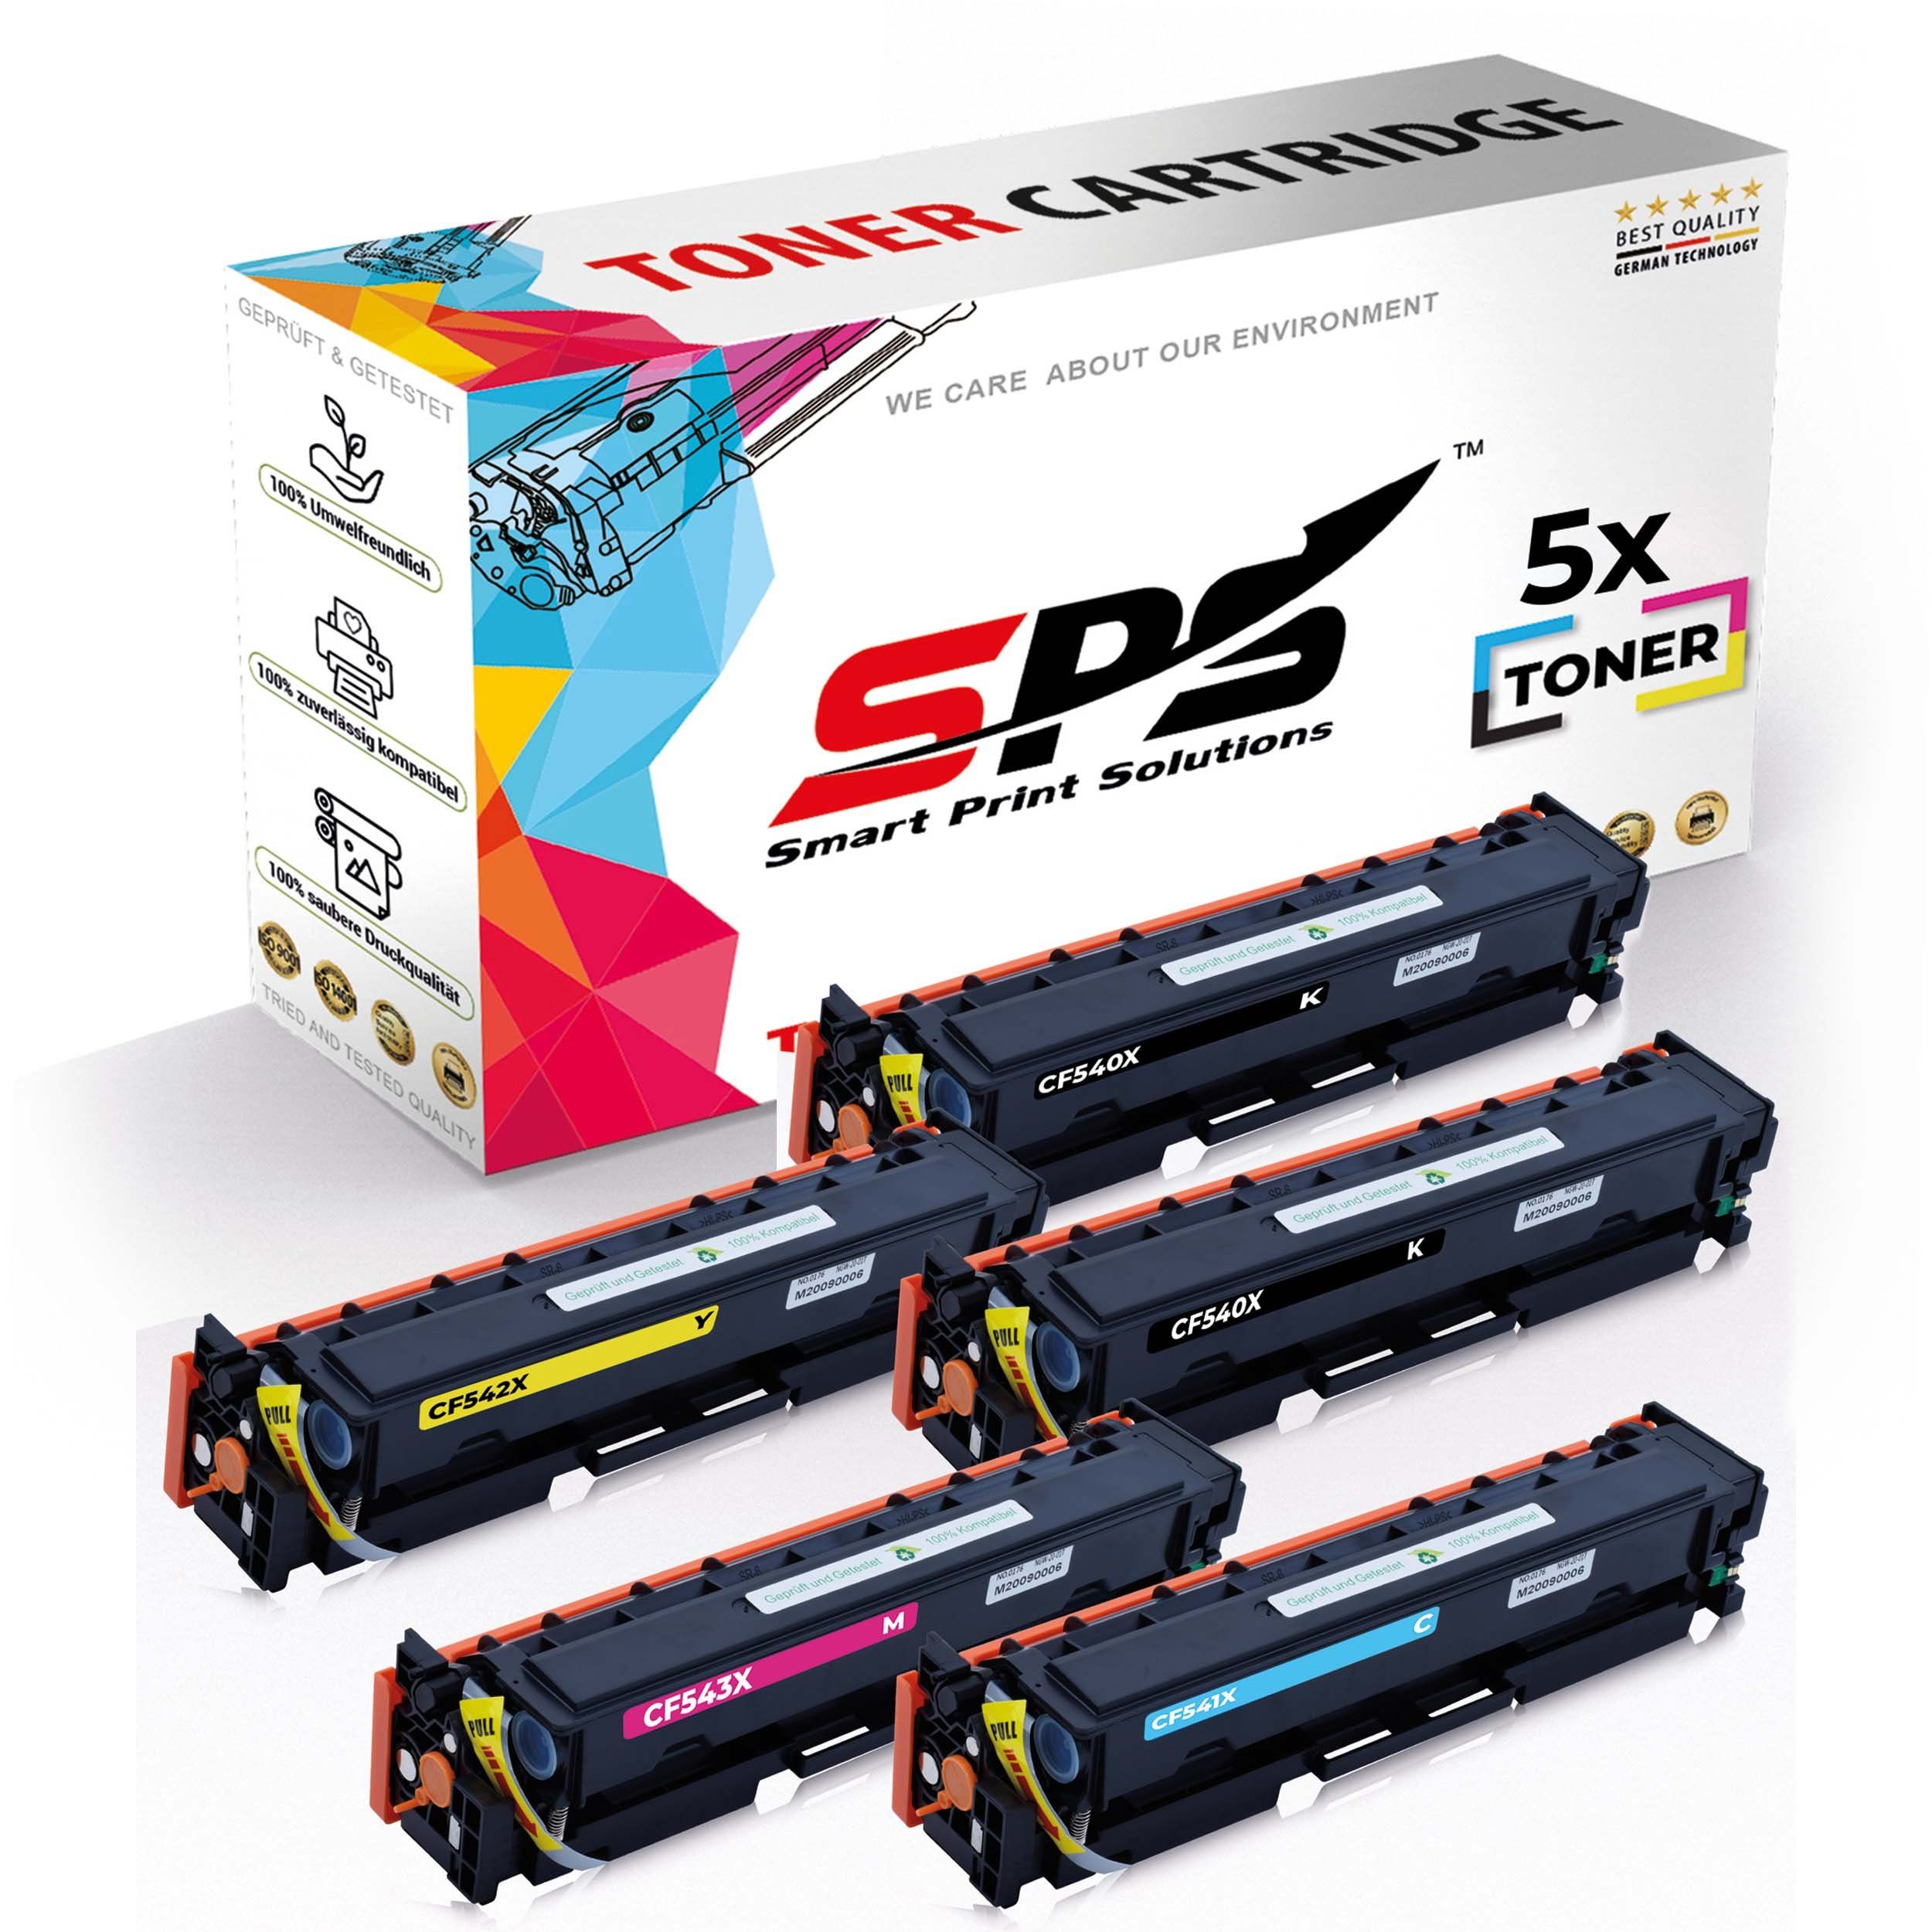 5x Kompatibel Multipack Tonerkartusche (5er Color Toner) SPS 5x Pack, für Set HP LaserJet,